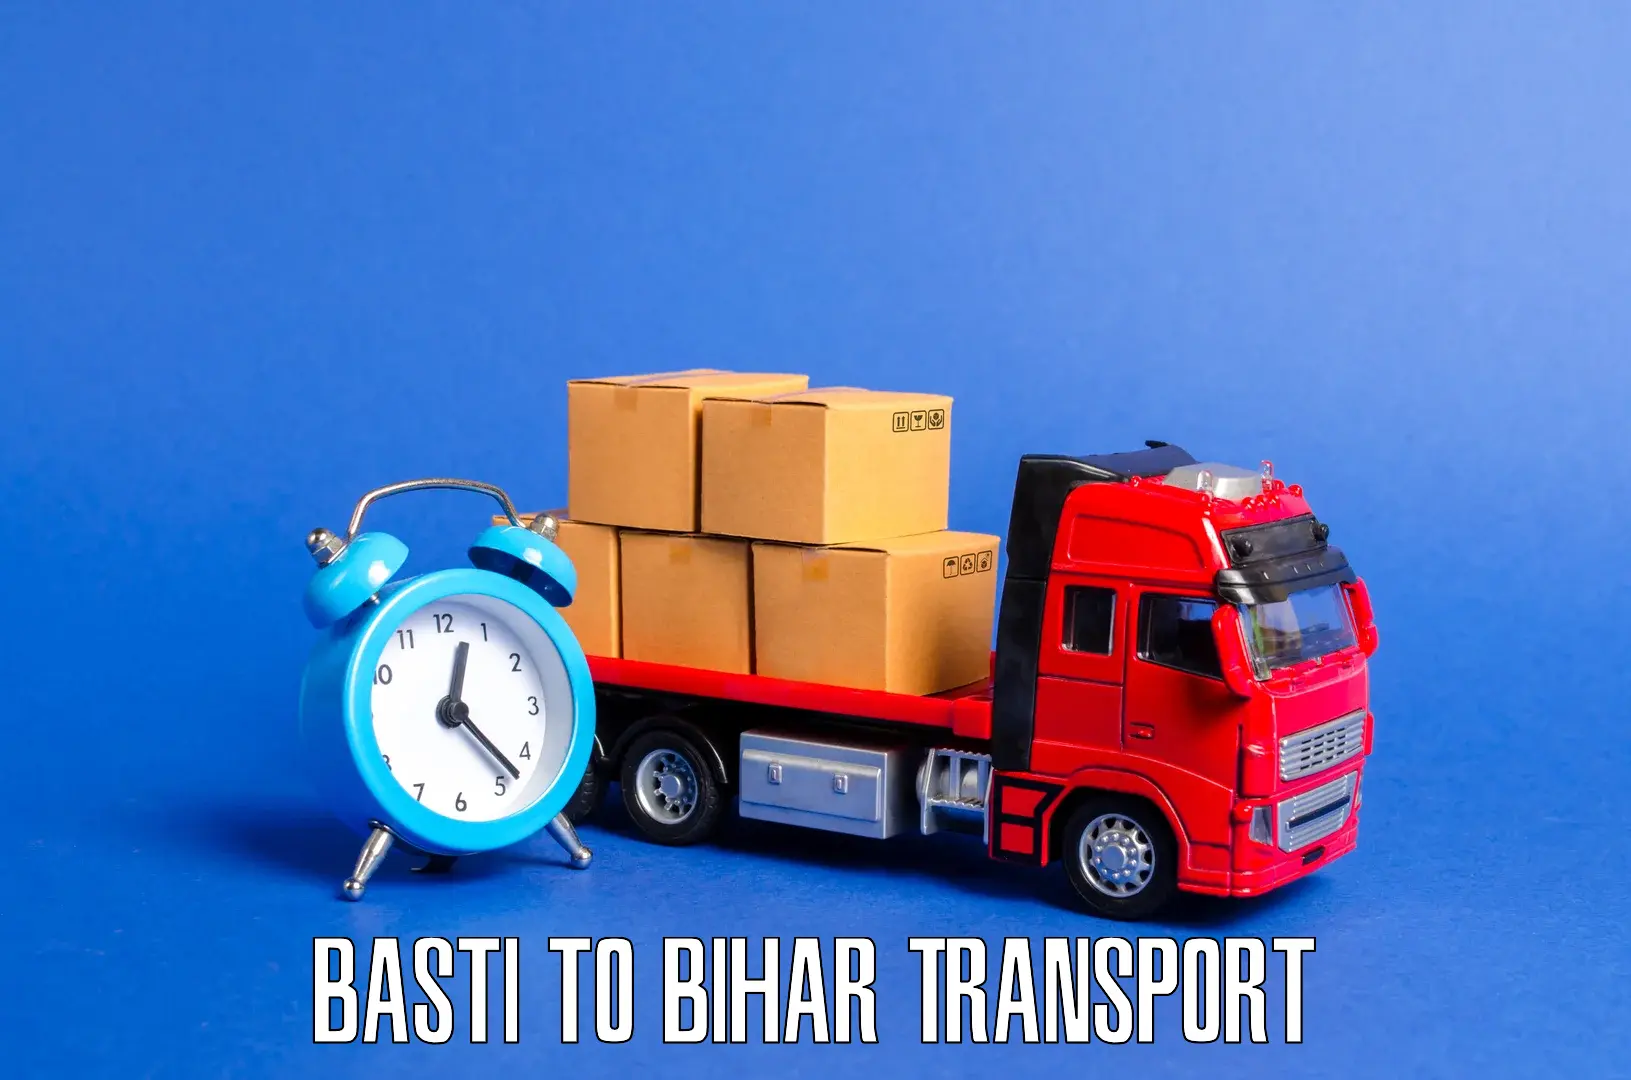 Shipping services Basti to Patna